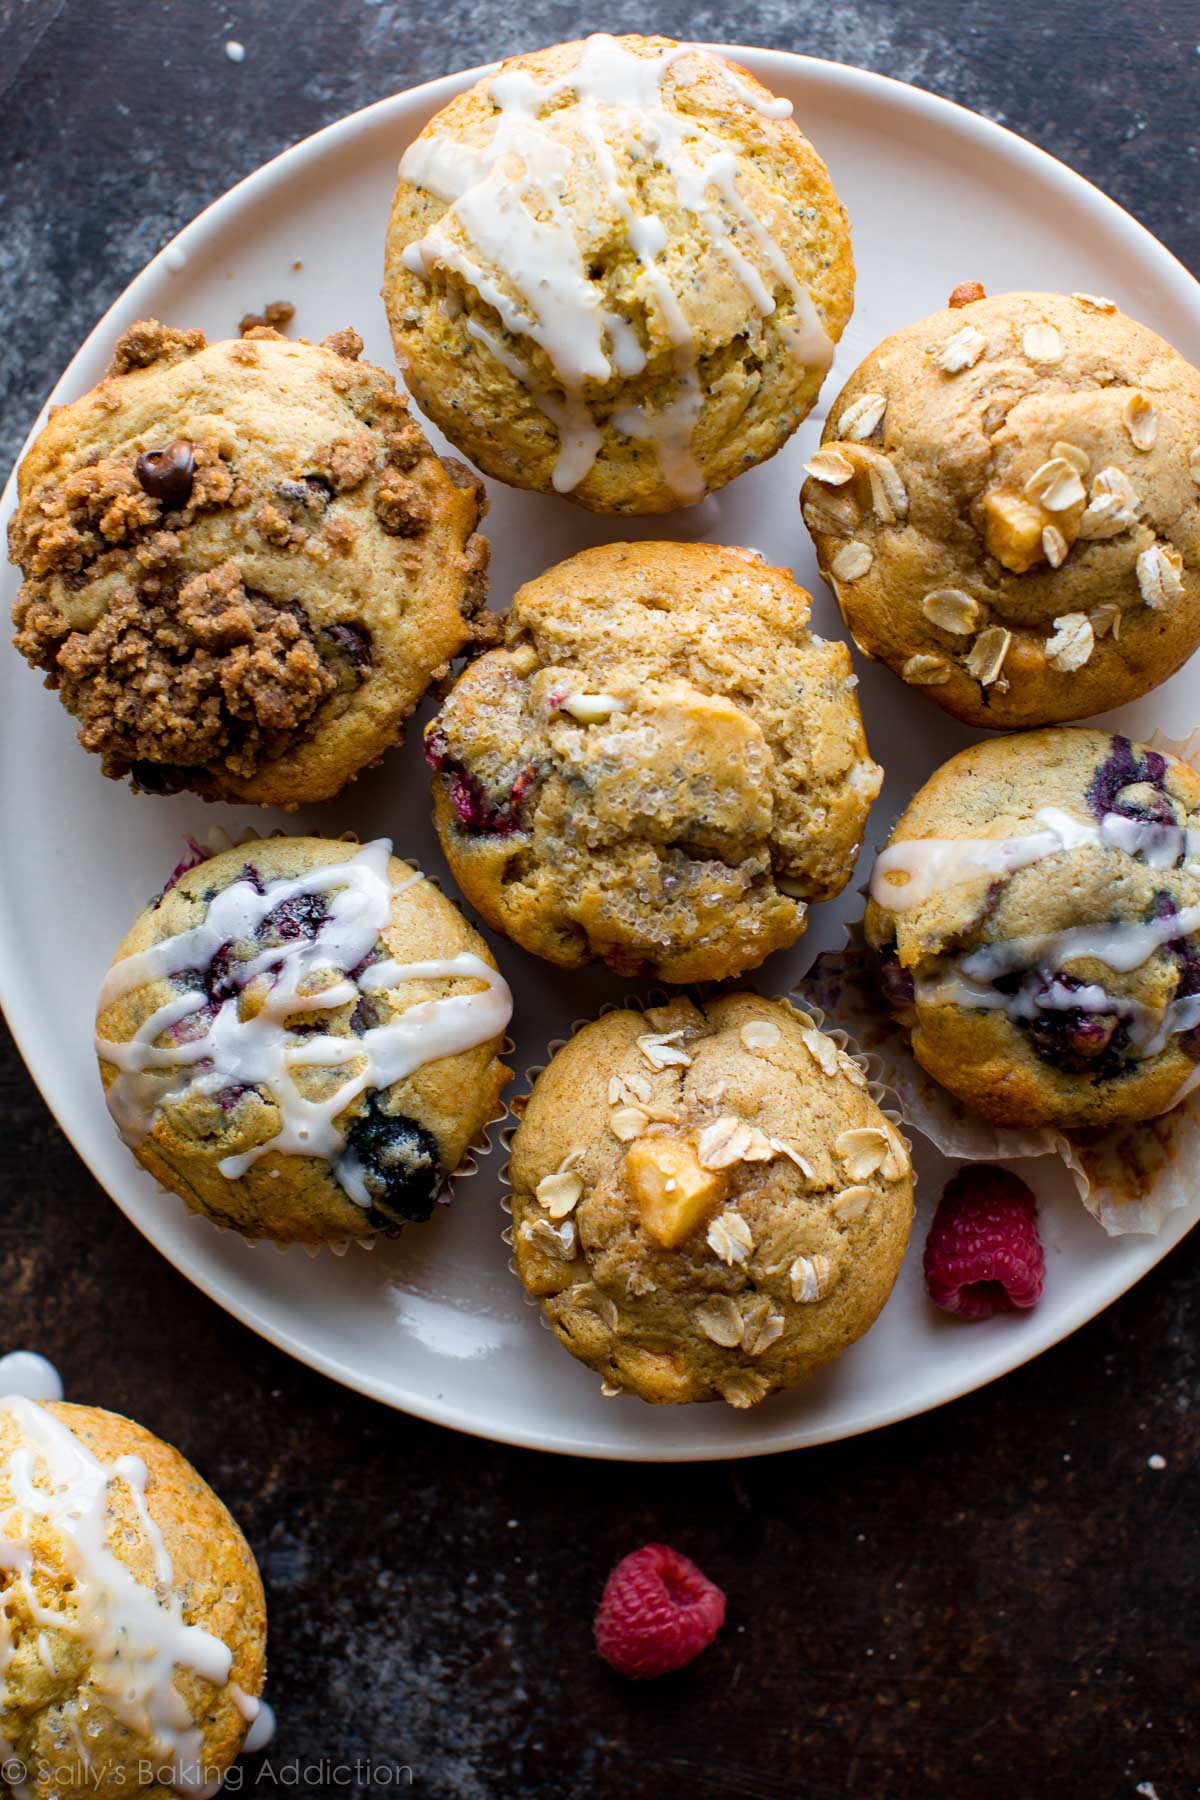 Utilisez cette recette de muffins pour faire n'importe quel muffin que vous aimez! Basique, facile, délicieux et facile à congeler! Recette sur sallysbakingaddiction.com